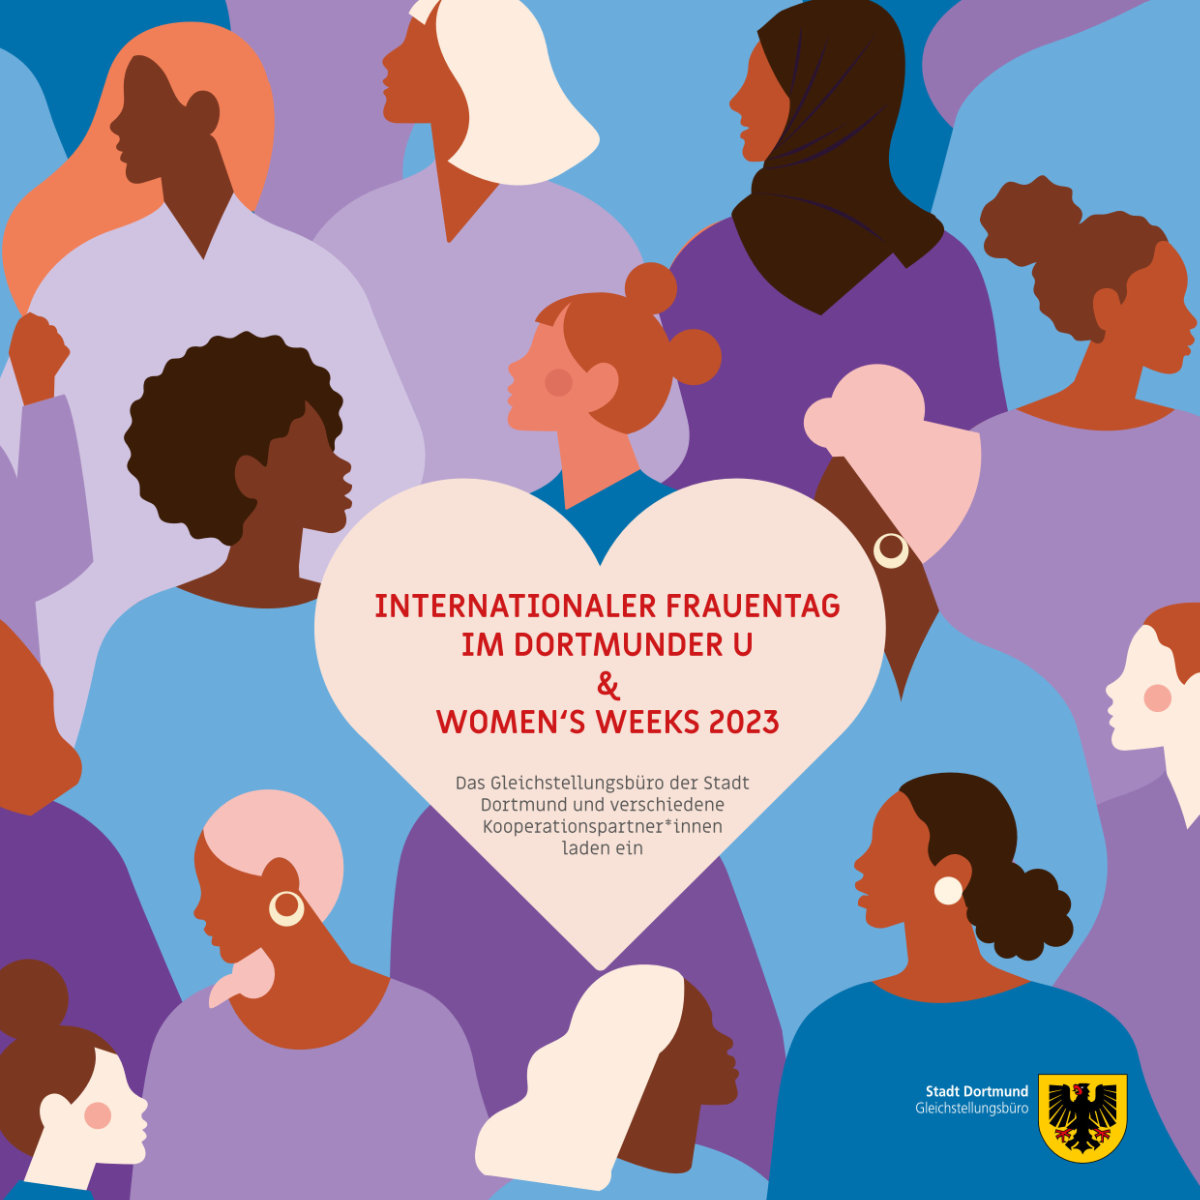 Featured image for “Internationaler Frauentag 08.03.2023 und Women’ s Weeks am 14.03.2023”